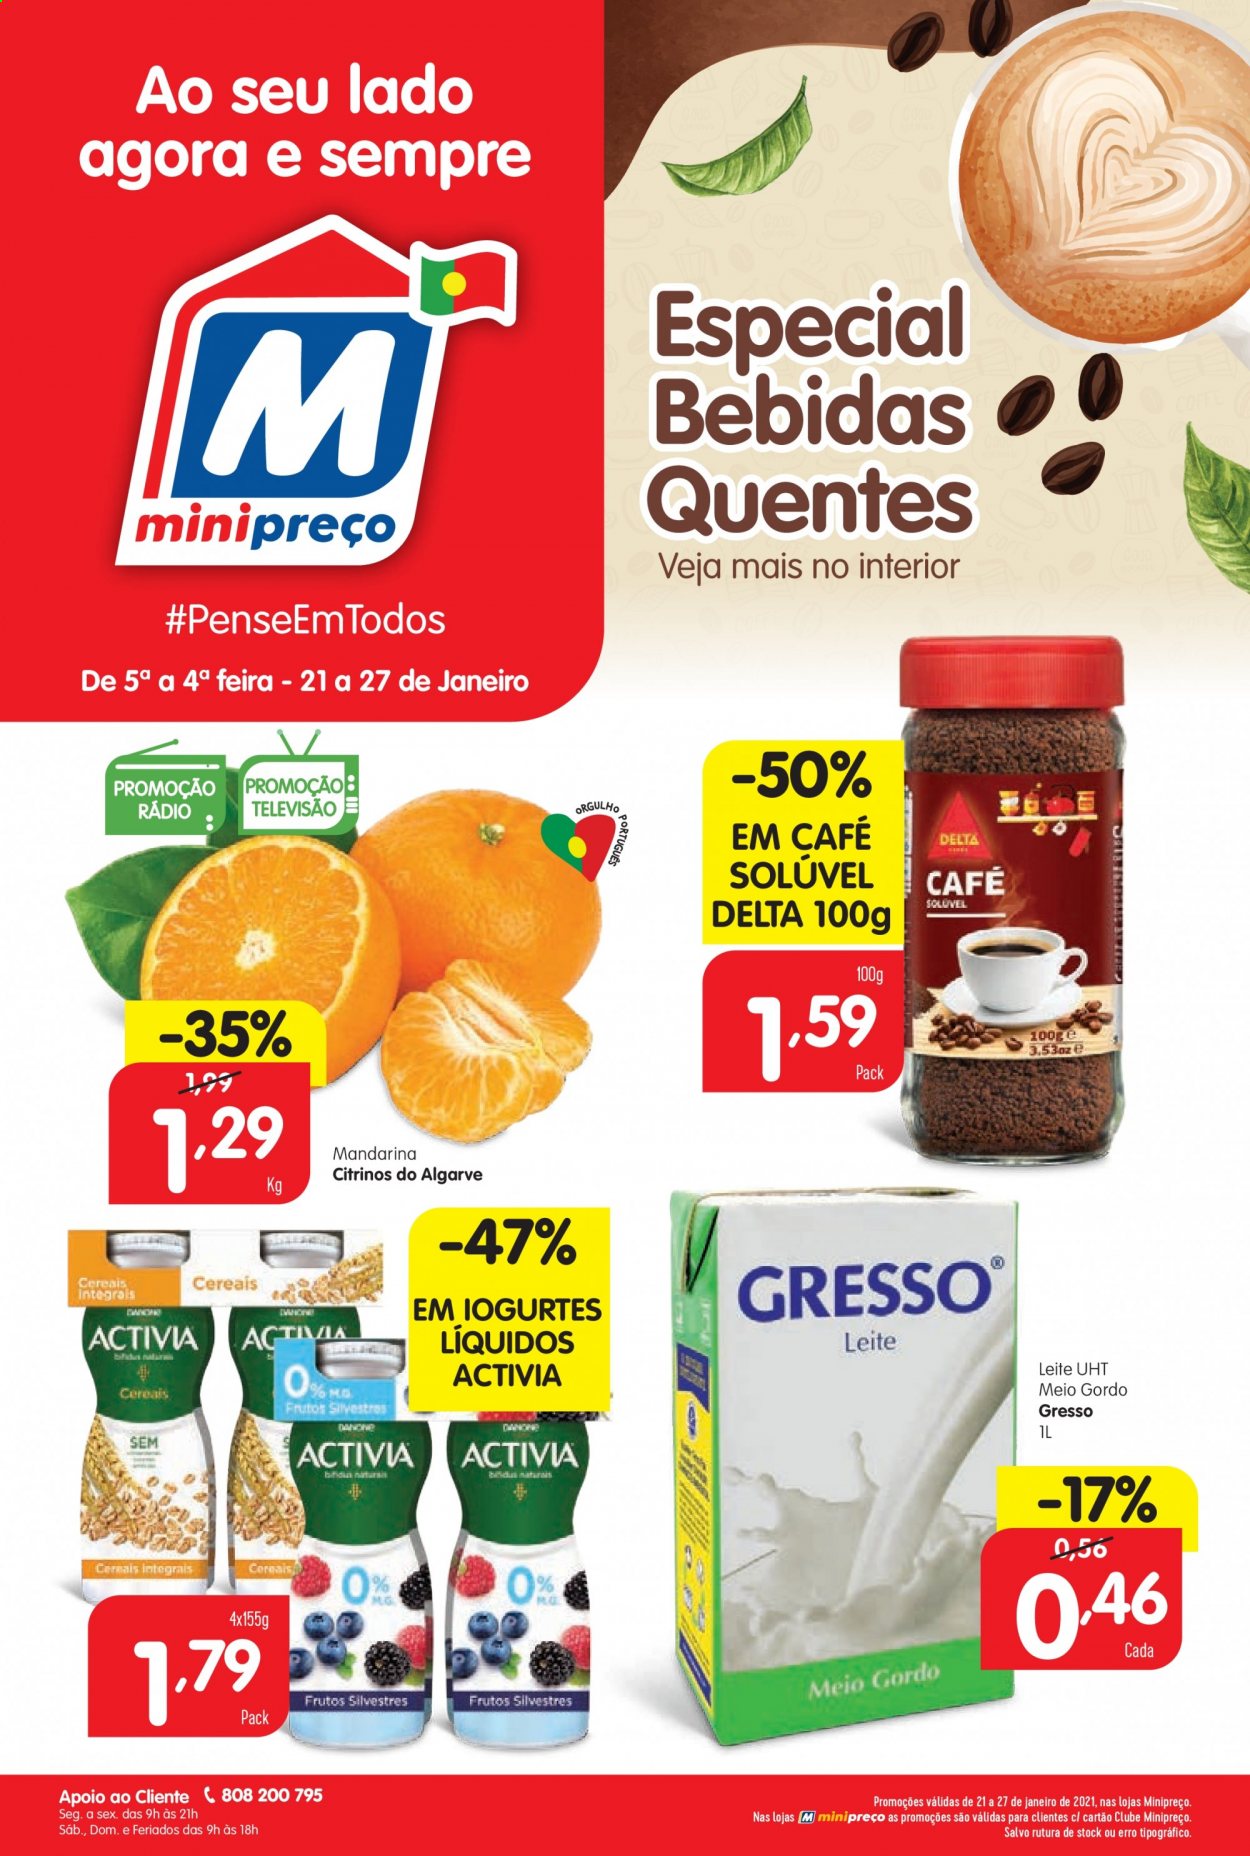 thumbnail - Folheto Minipreço - 21.1.2021 - 27.1.2021 - Produtos em promoção - mandarina, Activia, leite, cereais, café, café solúvel. Página 1.